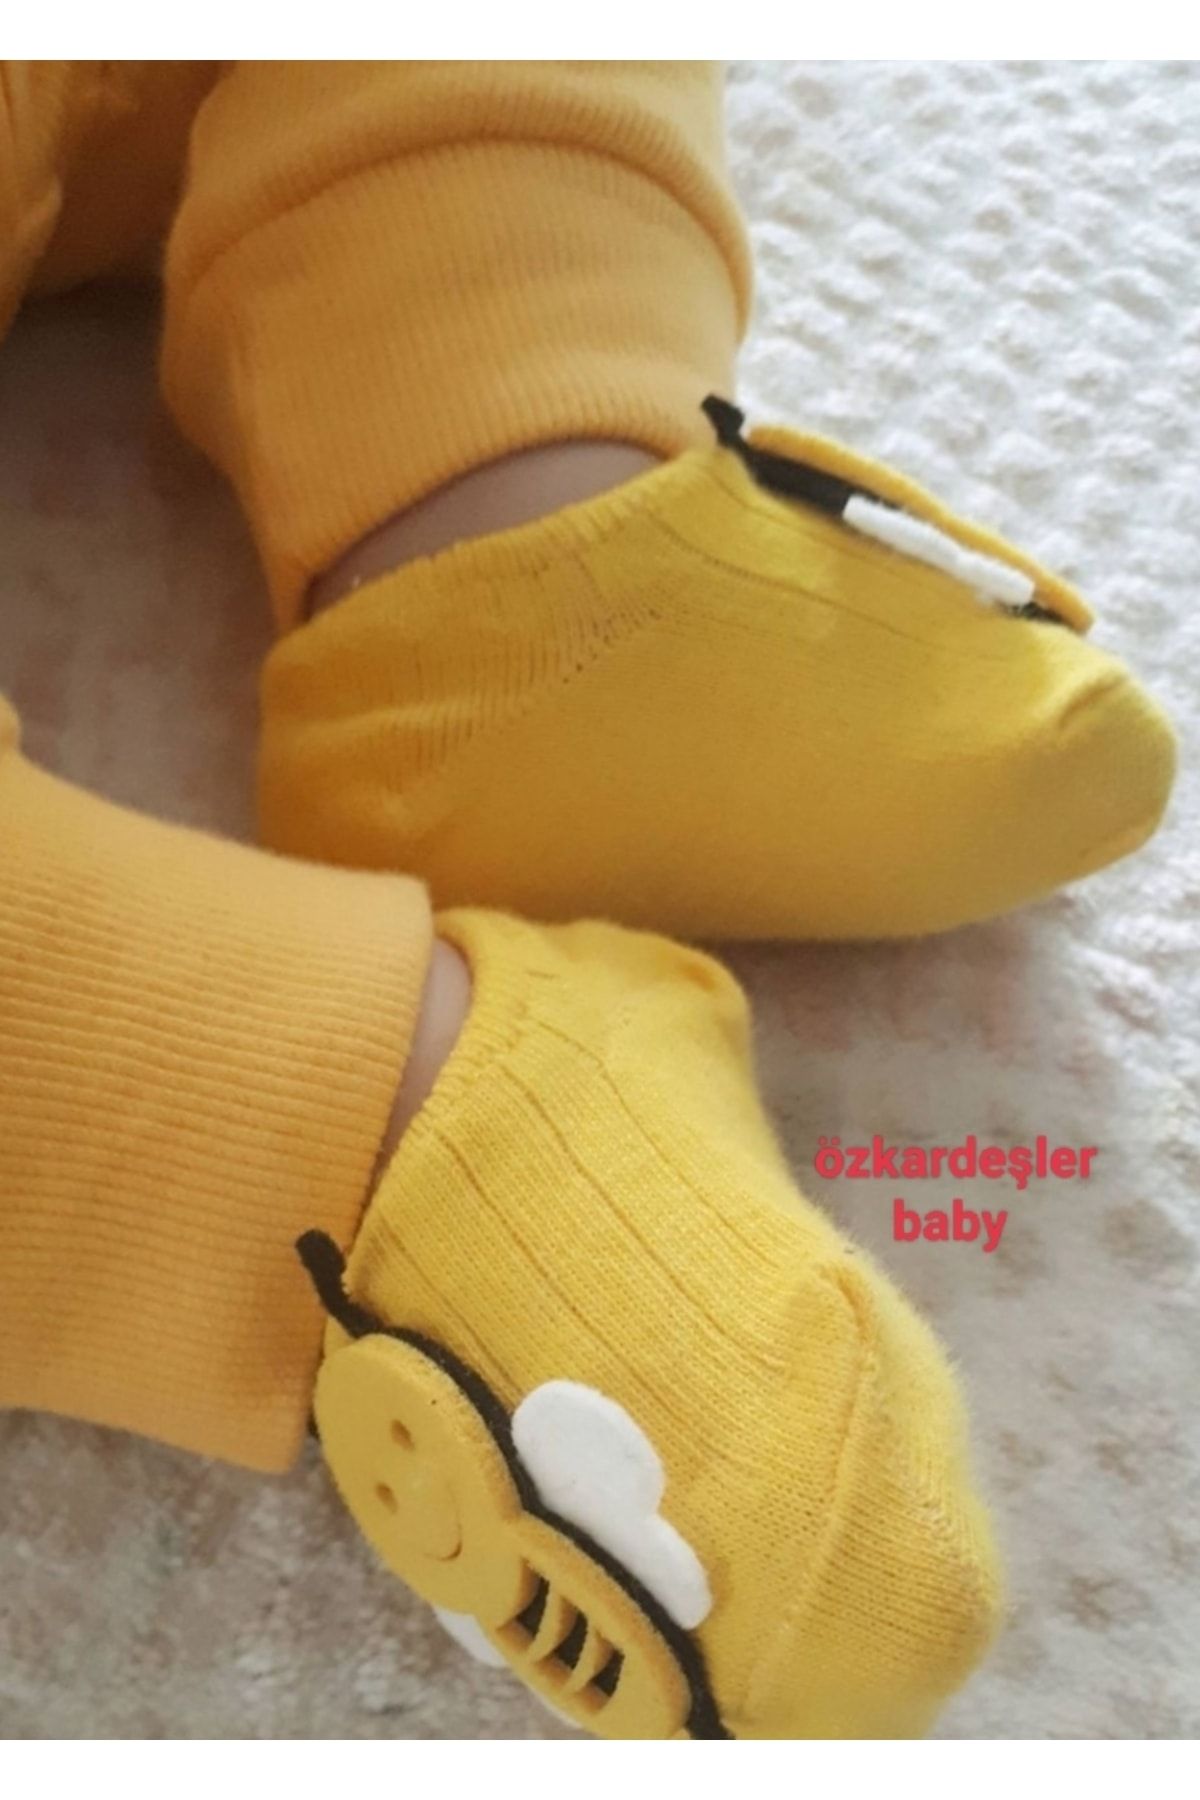 ÖZKARDEŞLER BABY Bebek Babet Çorap Keçe Fükürlü Arı